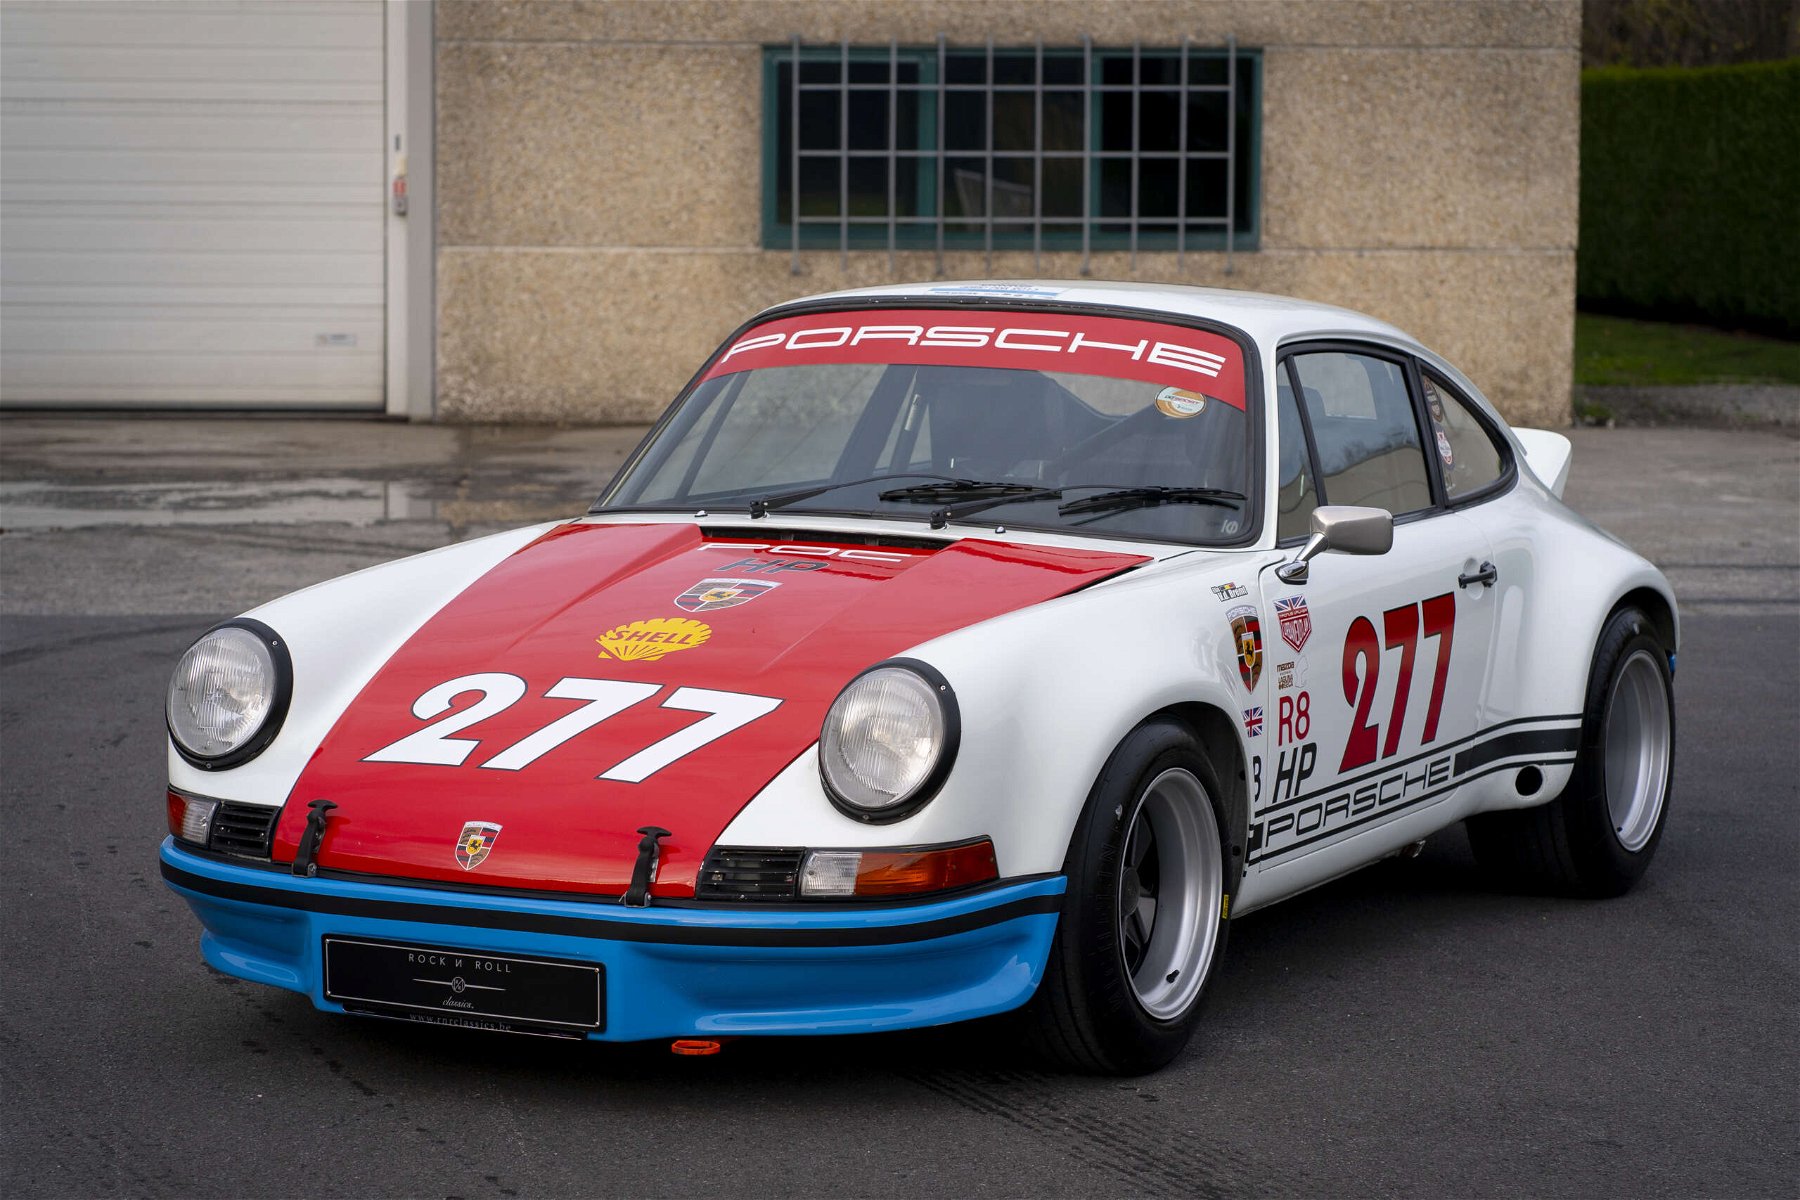 Leeuw Jet overschot Porsche 911 Modified 1972 - elferspot.com - Marketplace for Porsche Sports  Cars